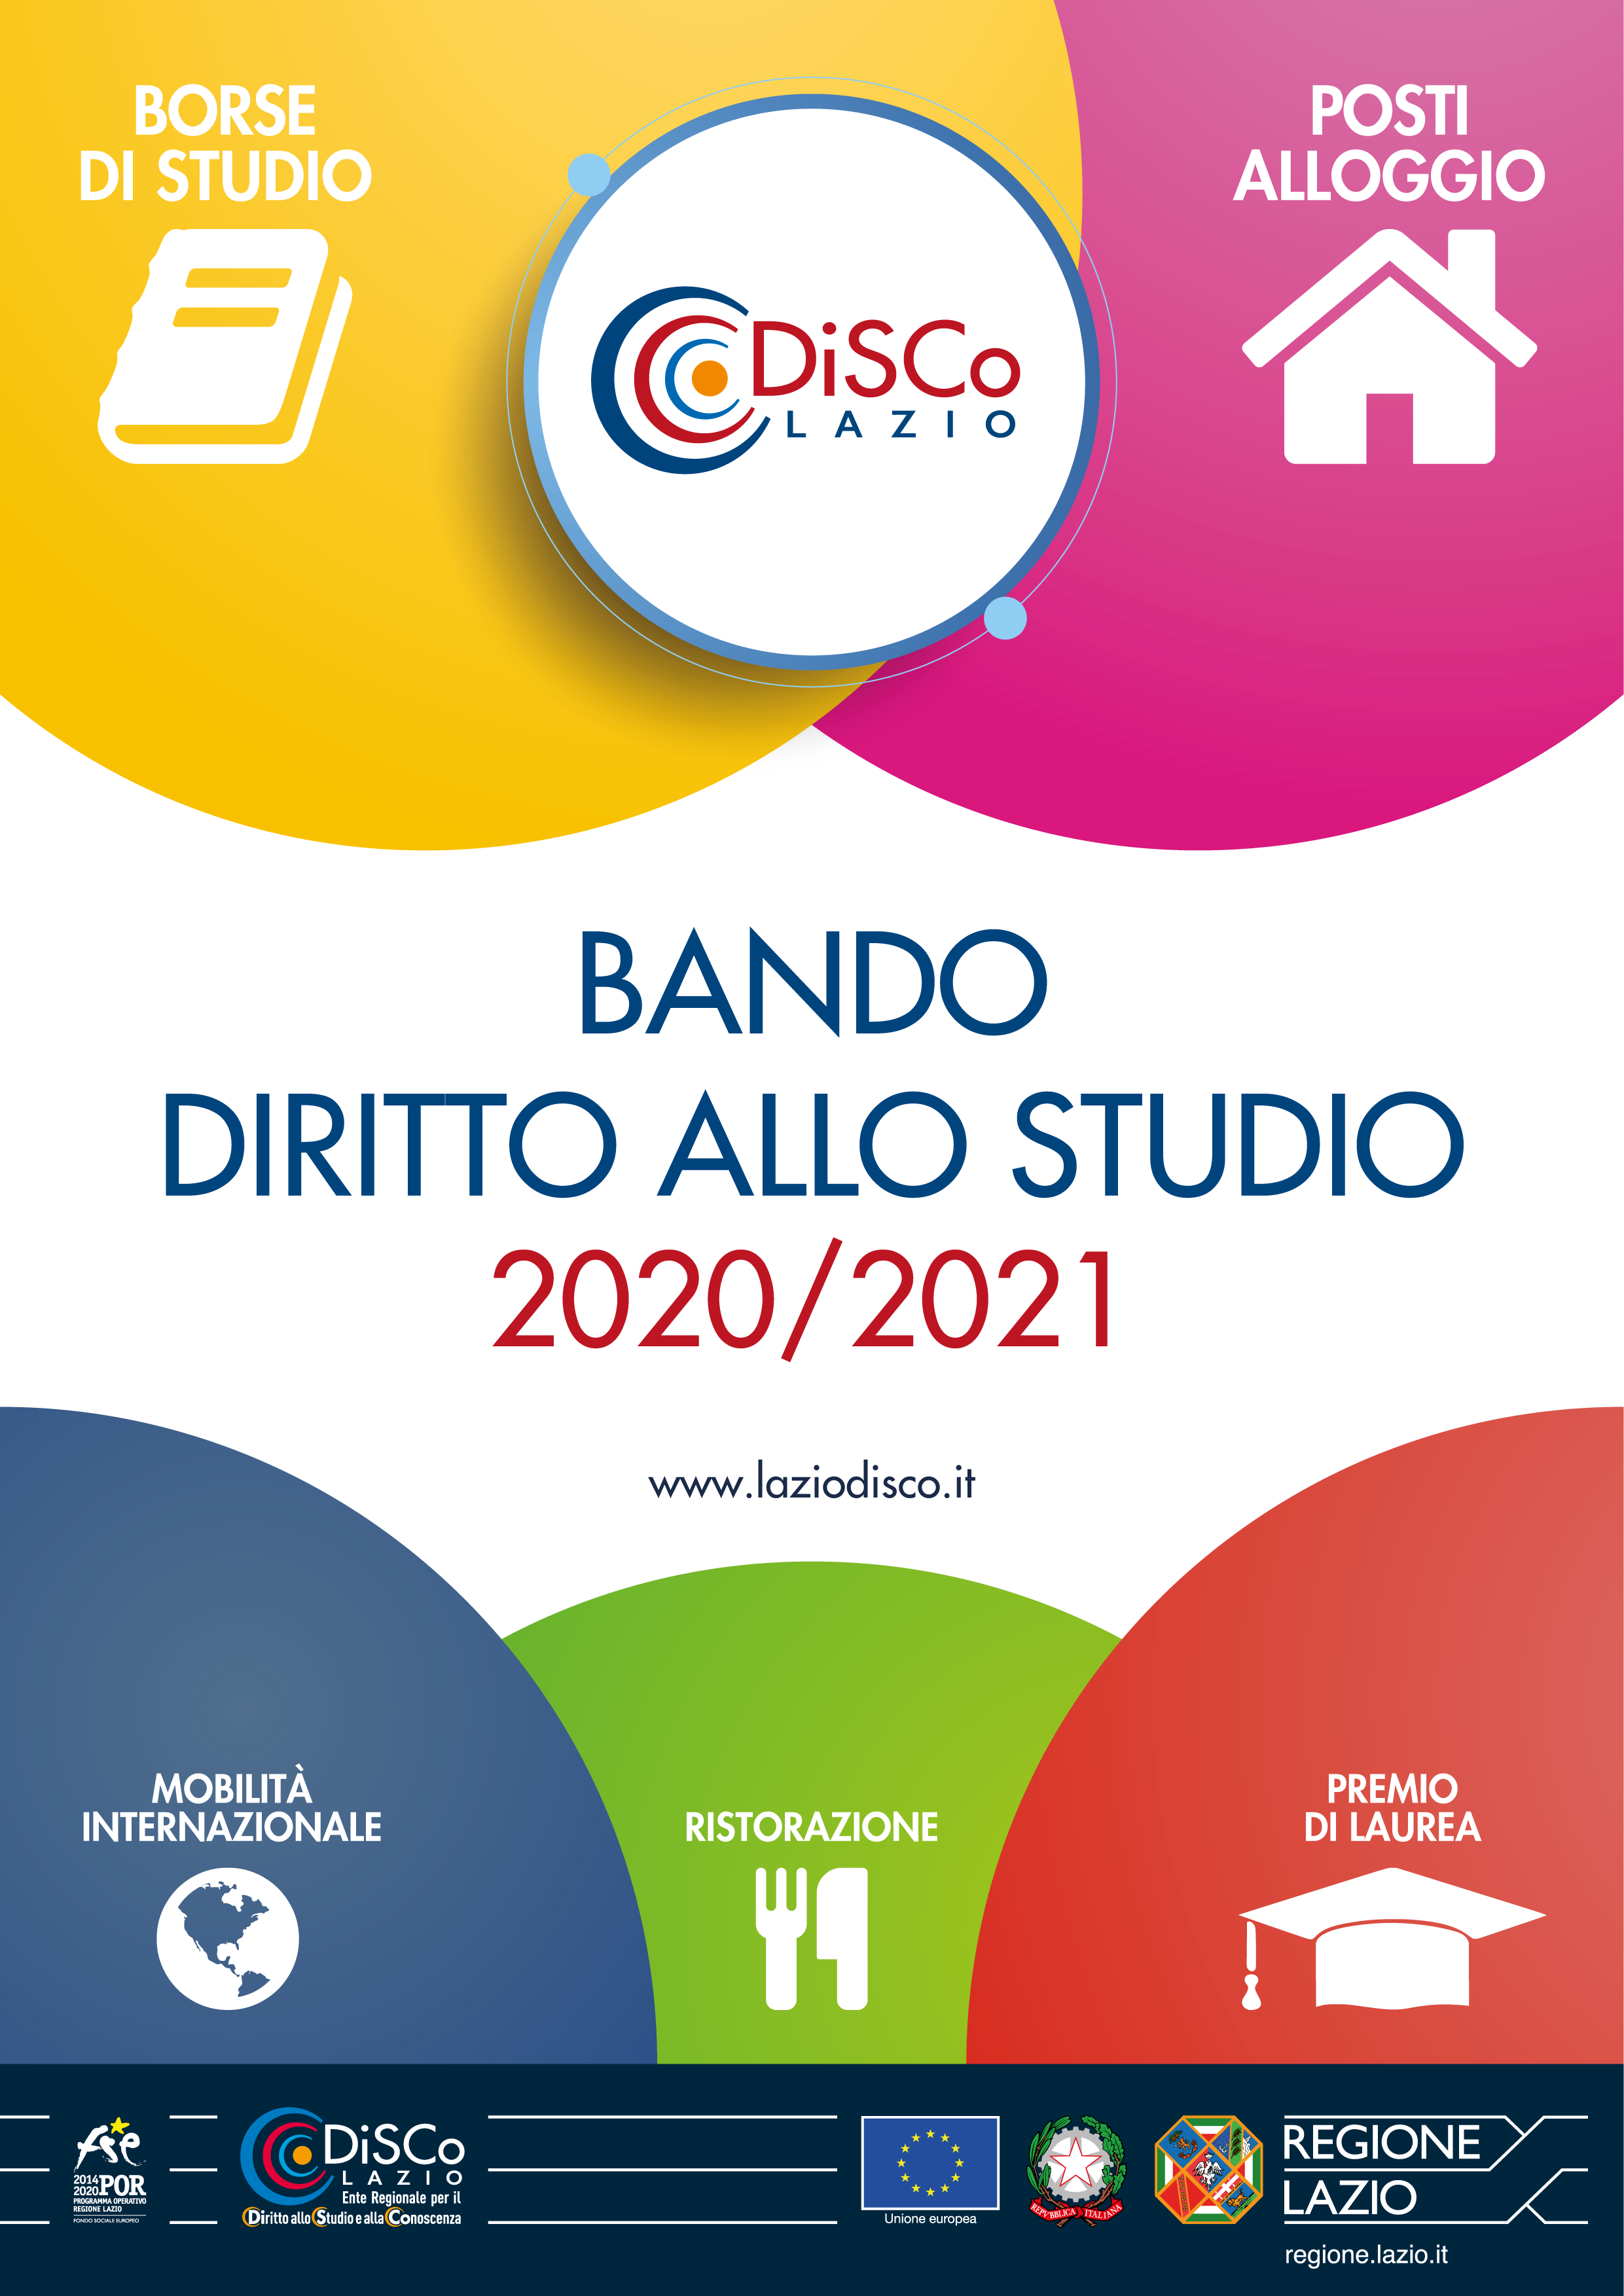 Bando Diritto allo Studio 2020/2021